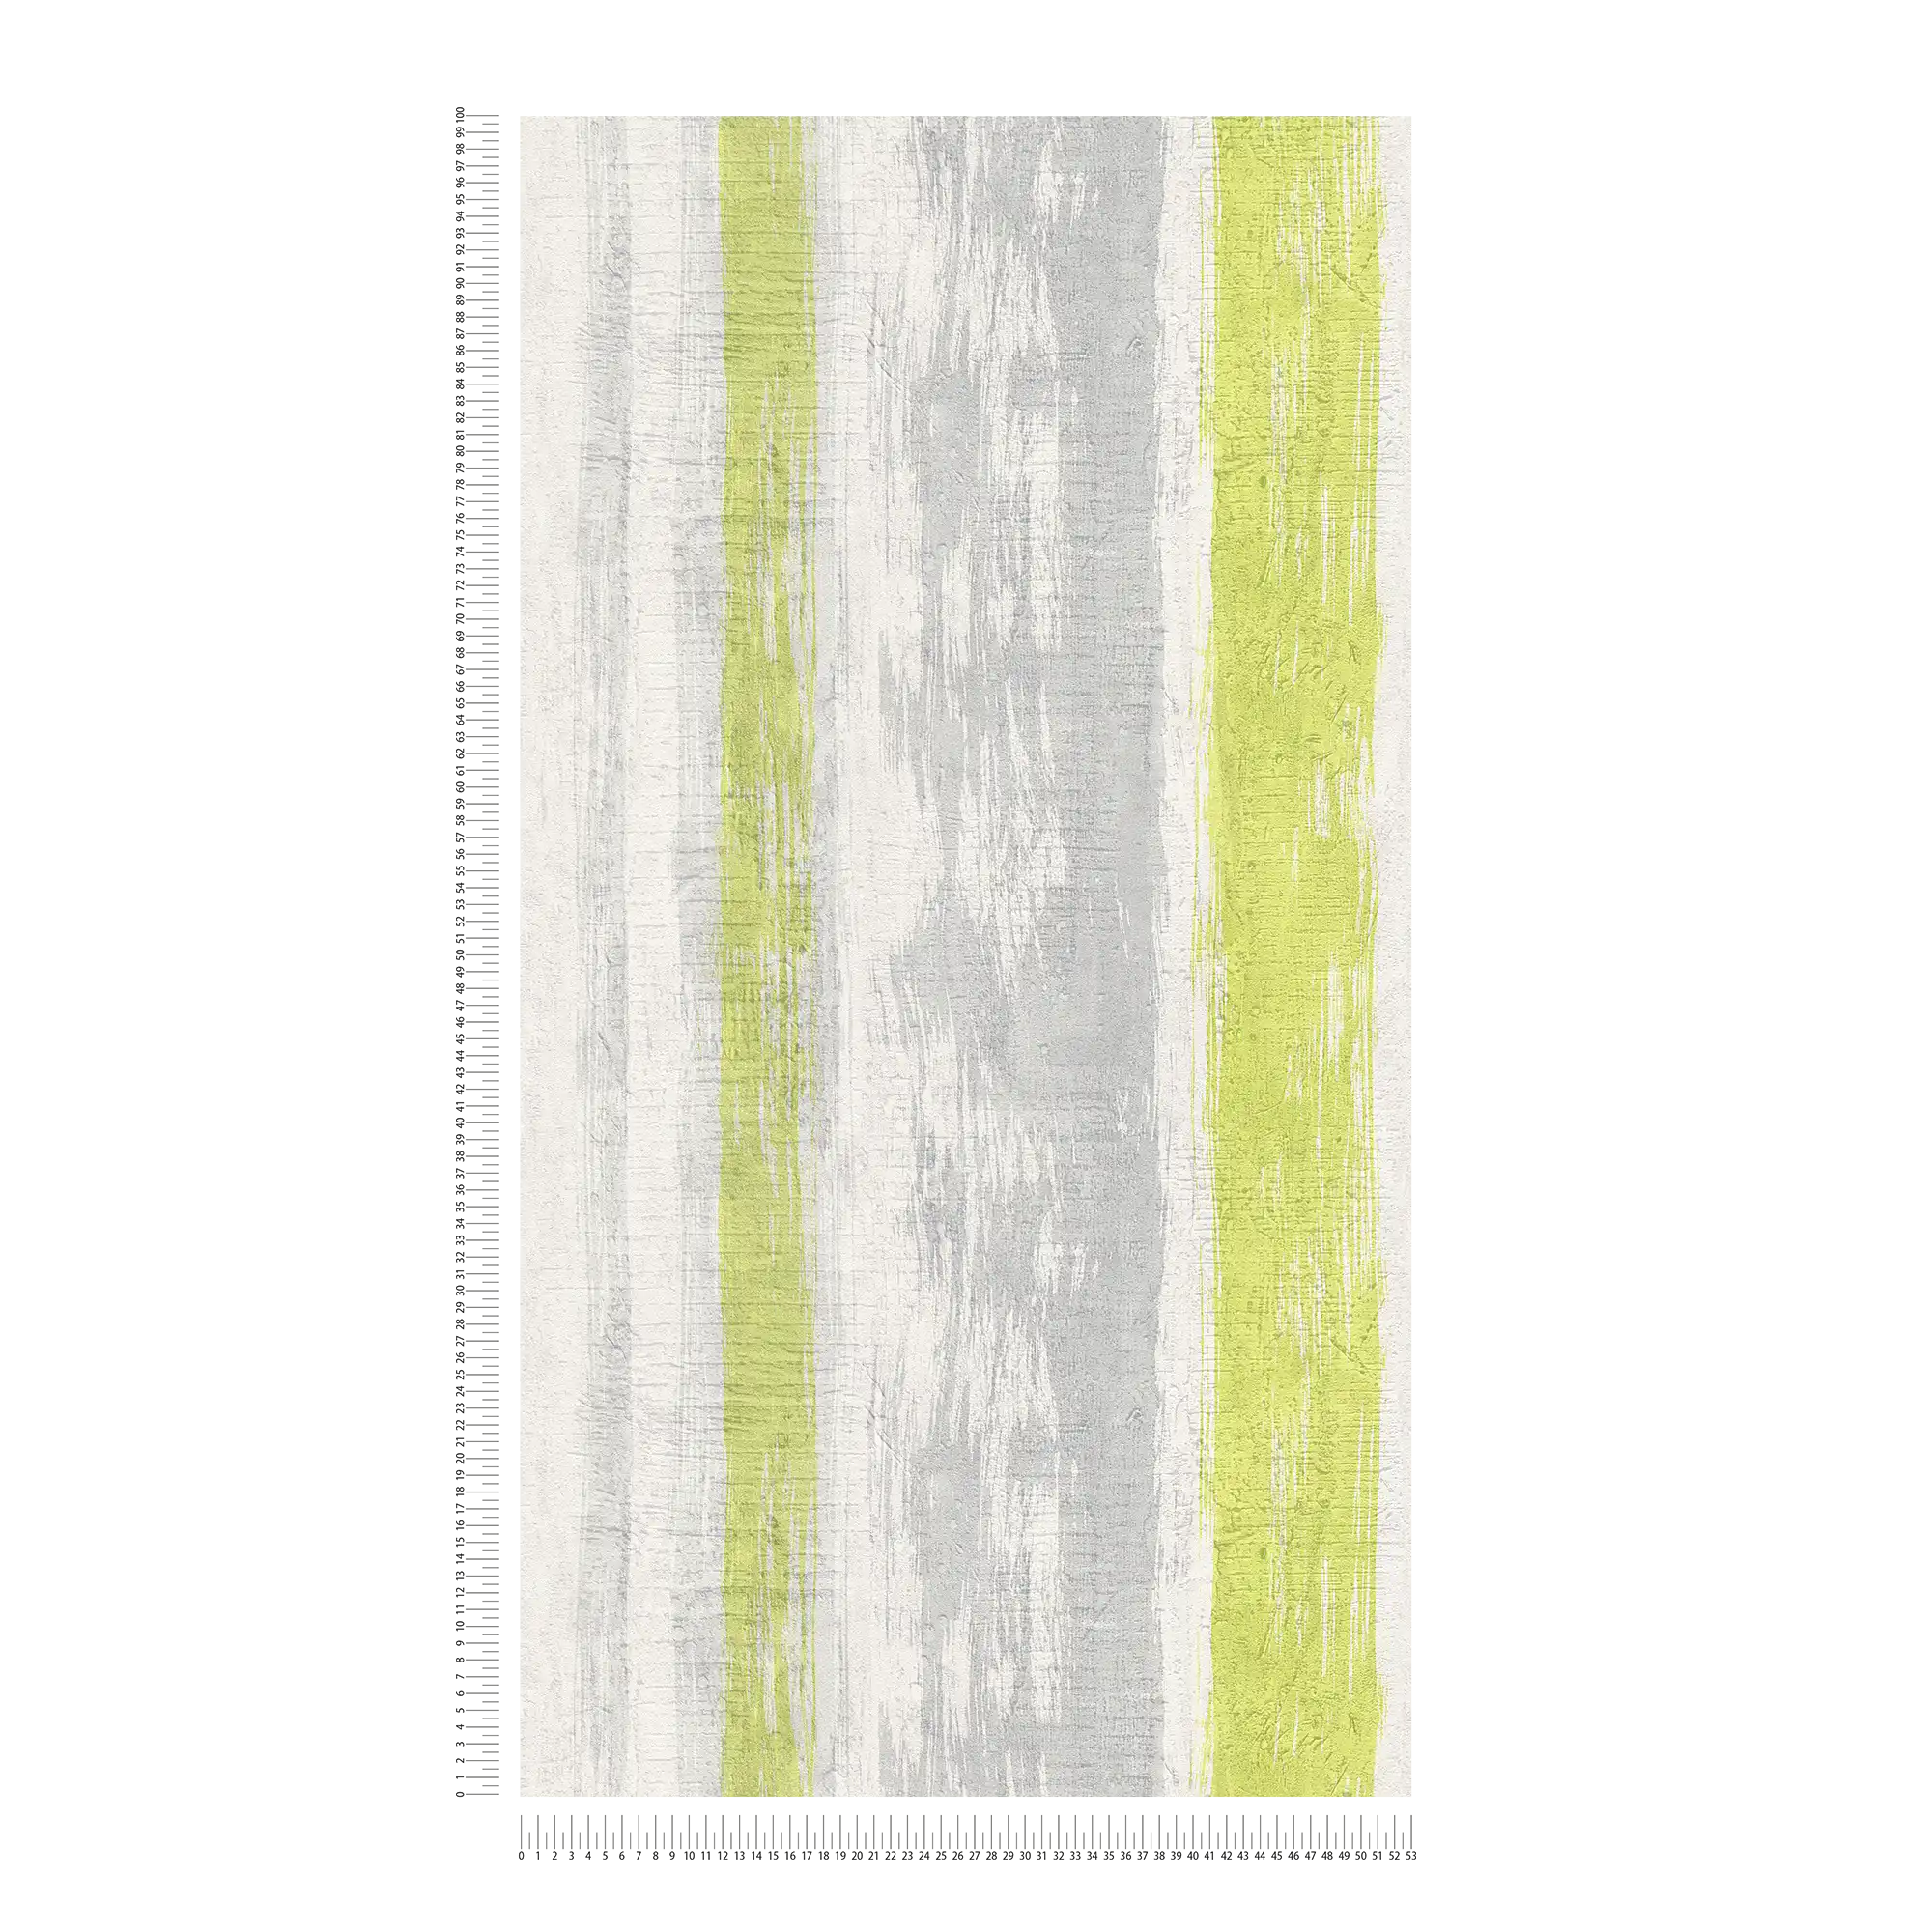             Papel pintado a rayas con estructura de yeso y acento de color - gris, verde, amarillo
        